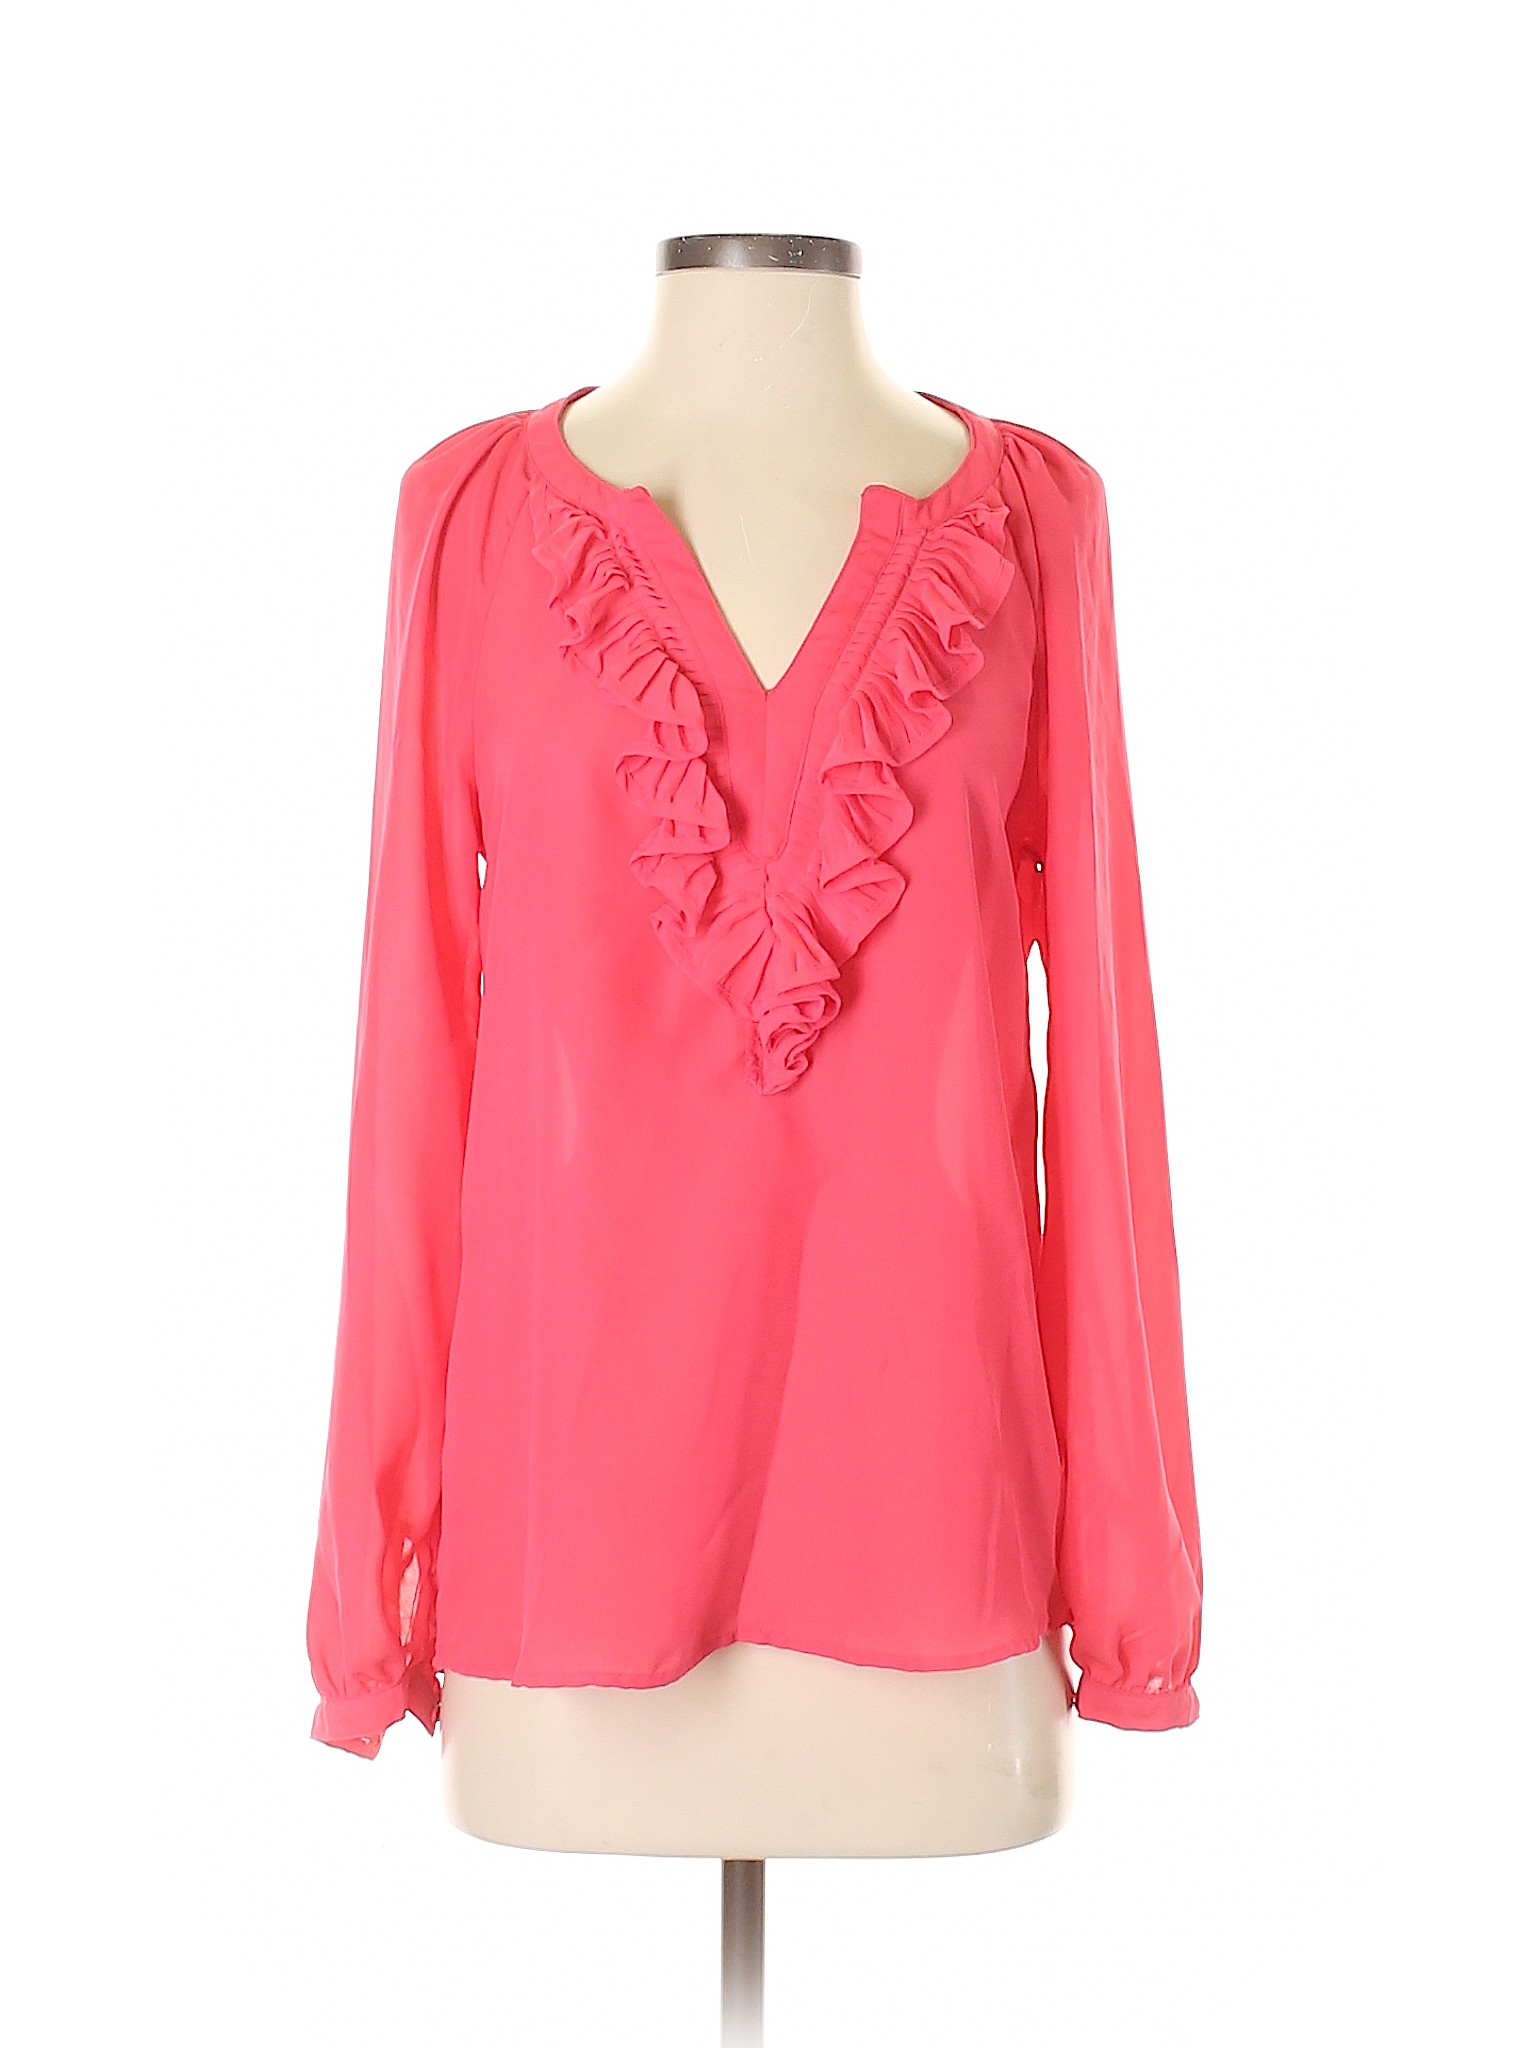 Elle Women Pink Long Sleeve Blouse XS | eBay